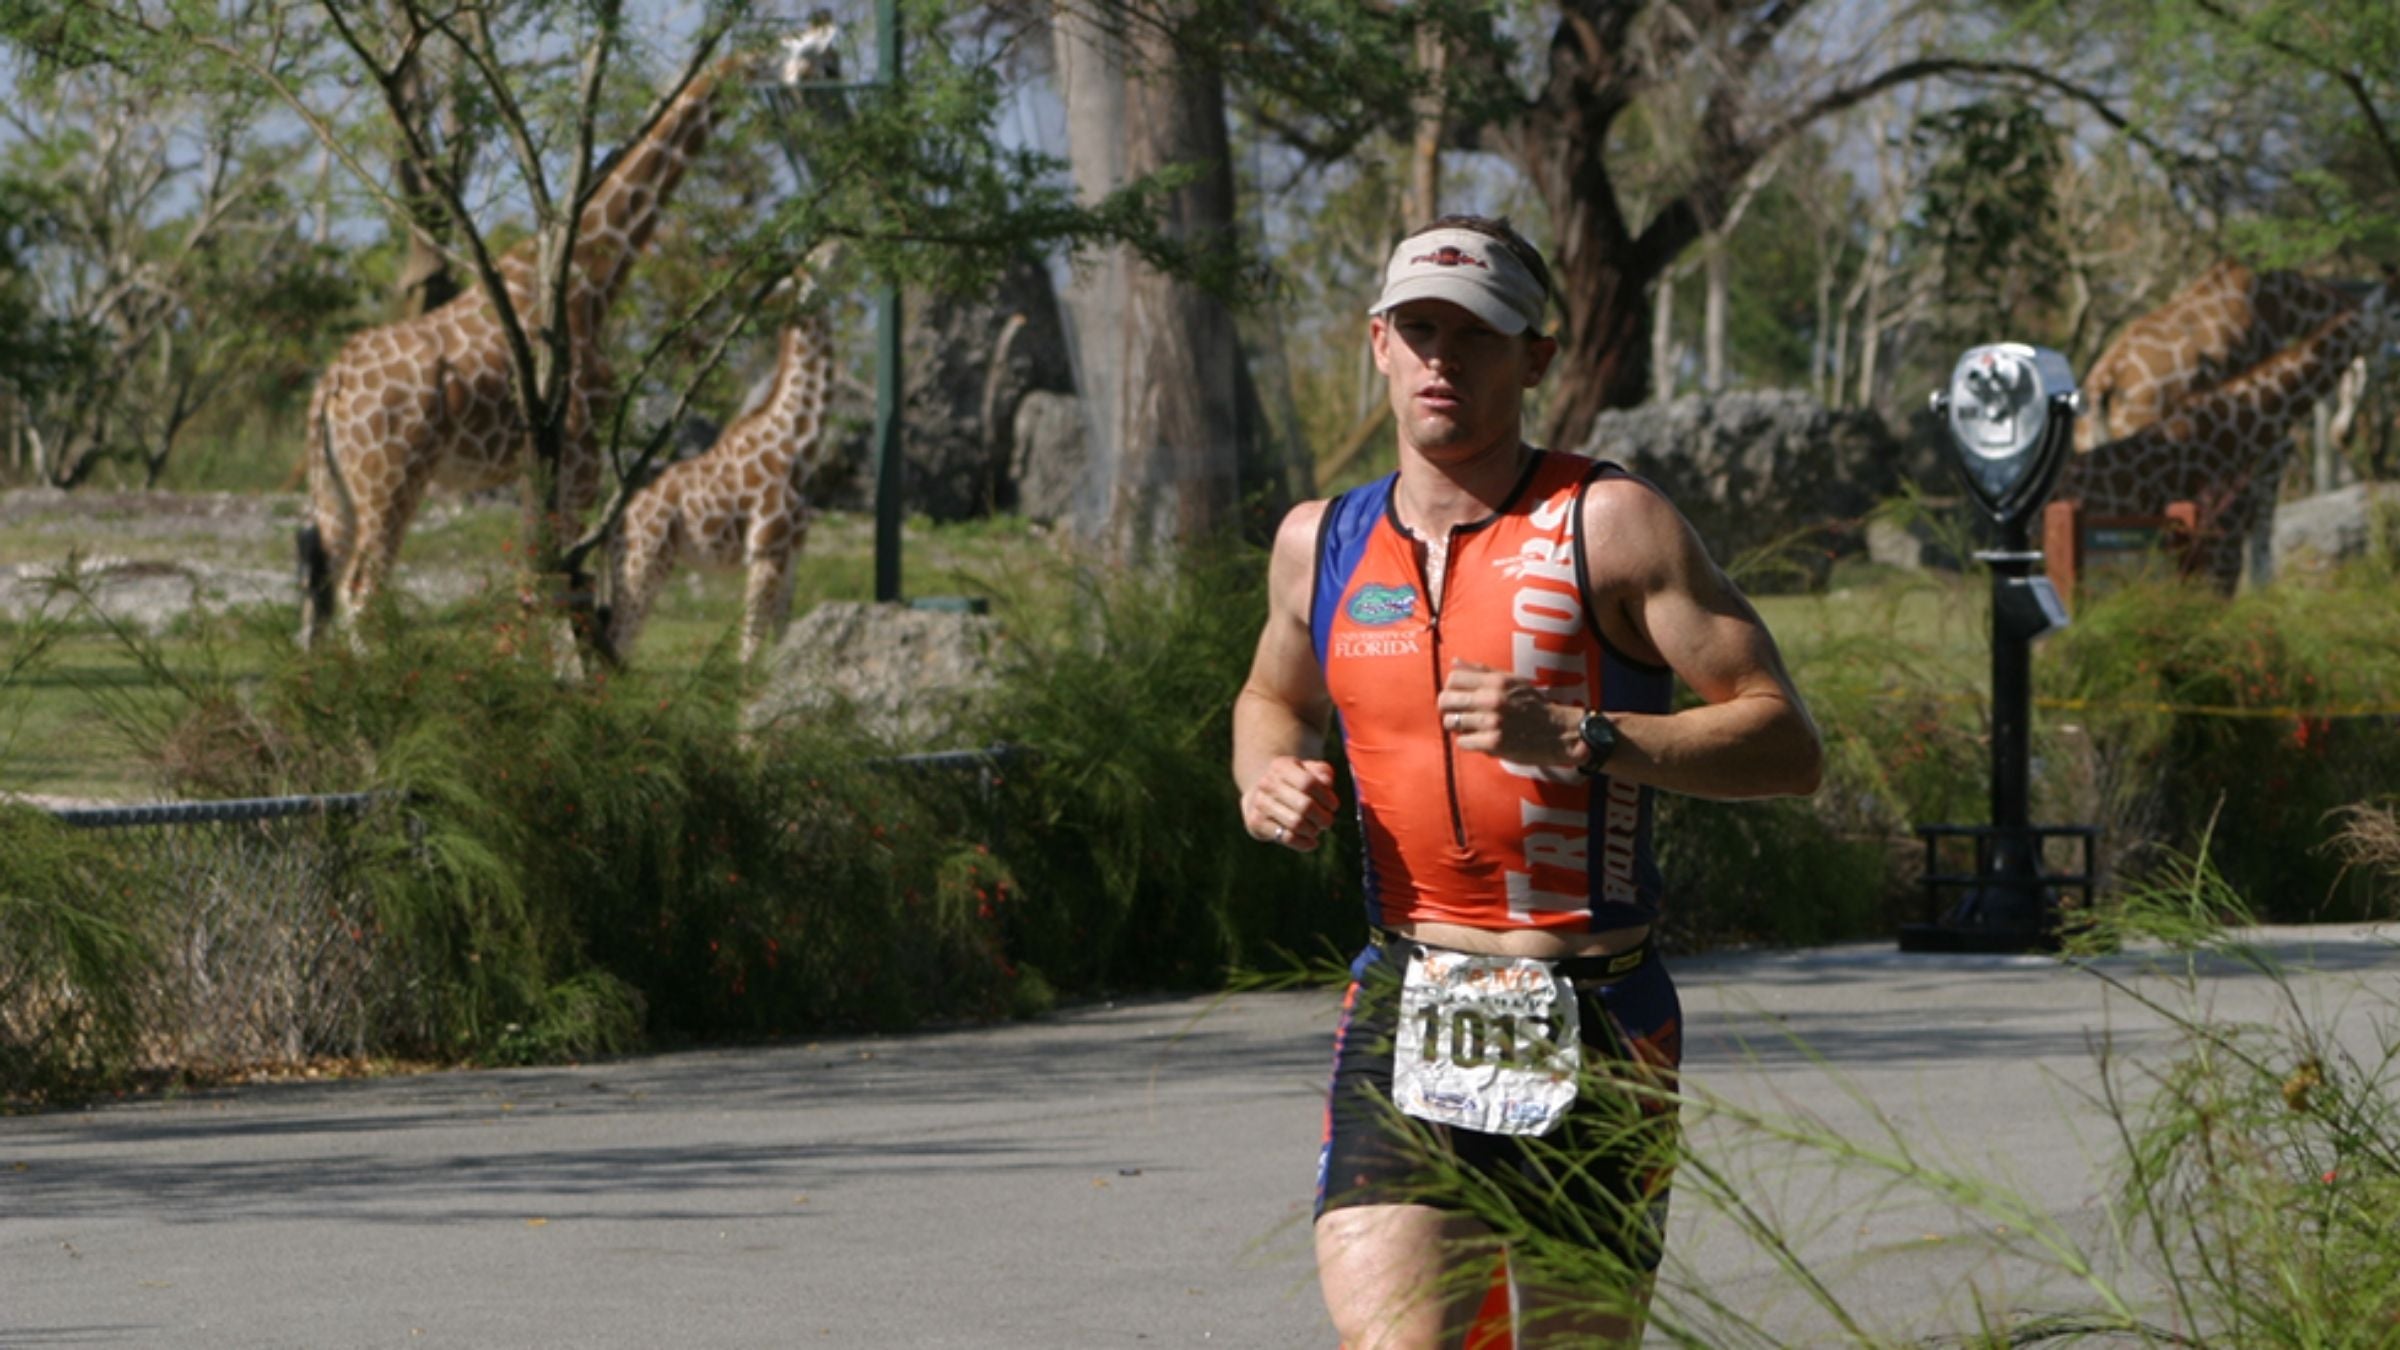 A man runs through the giraffe habitat at the zoo during the Miami Man triathlon.